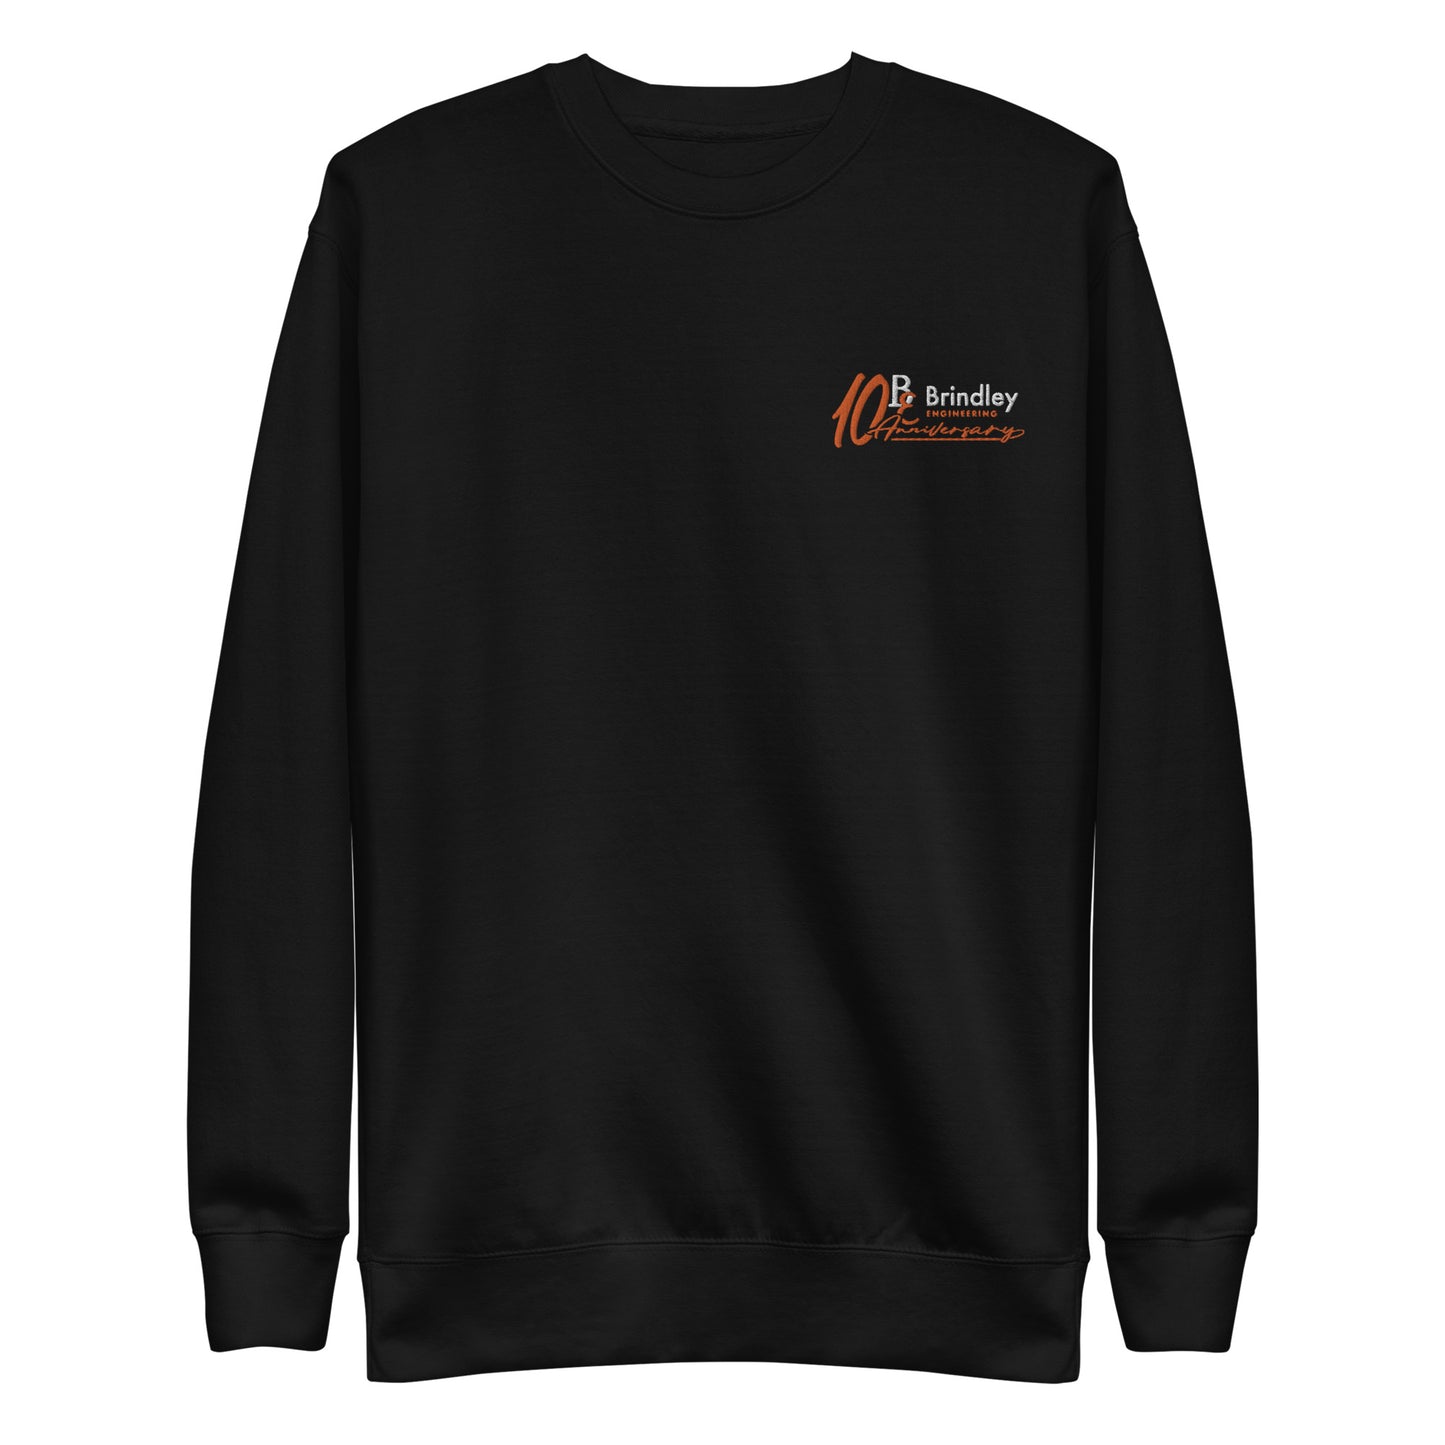 Unisex Premium Sweatshirt (fitted cut) - Brindley Engineering